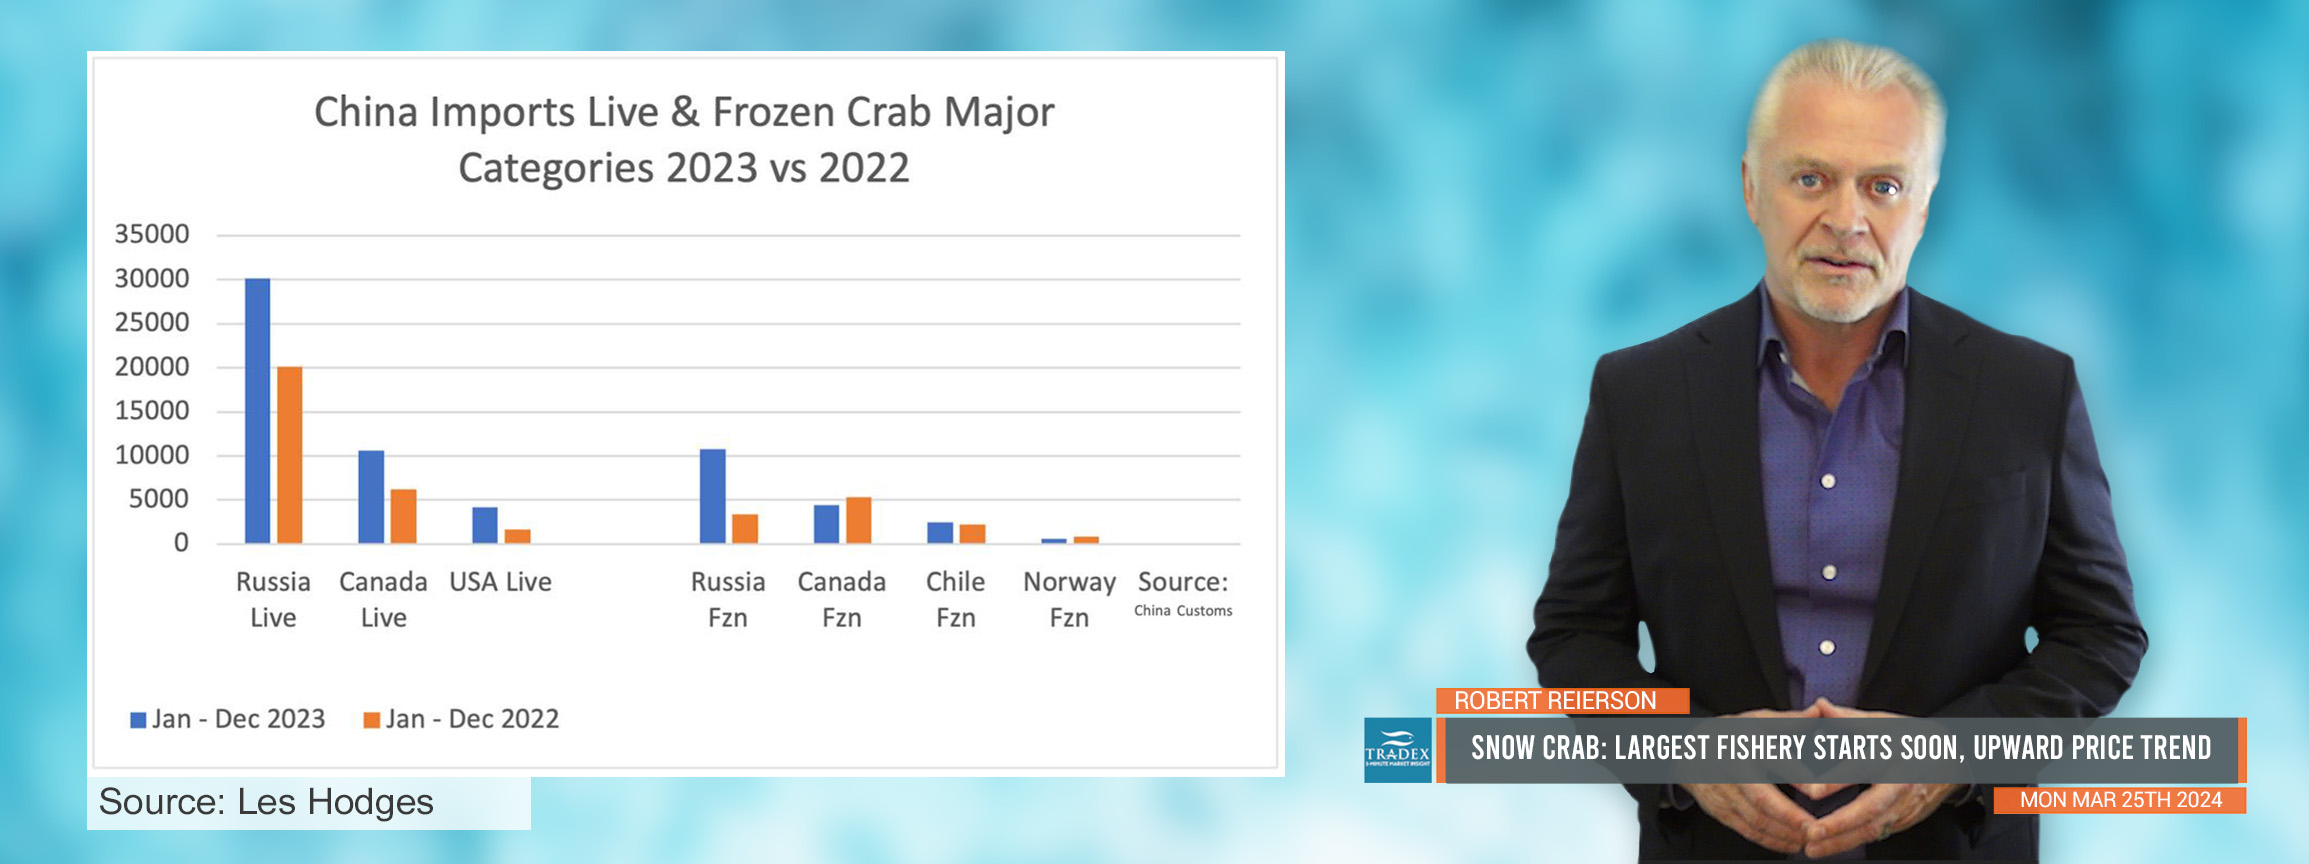 Snow Crab Update